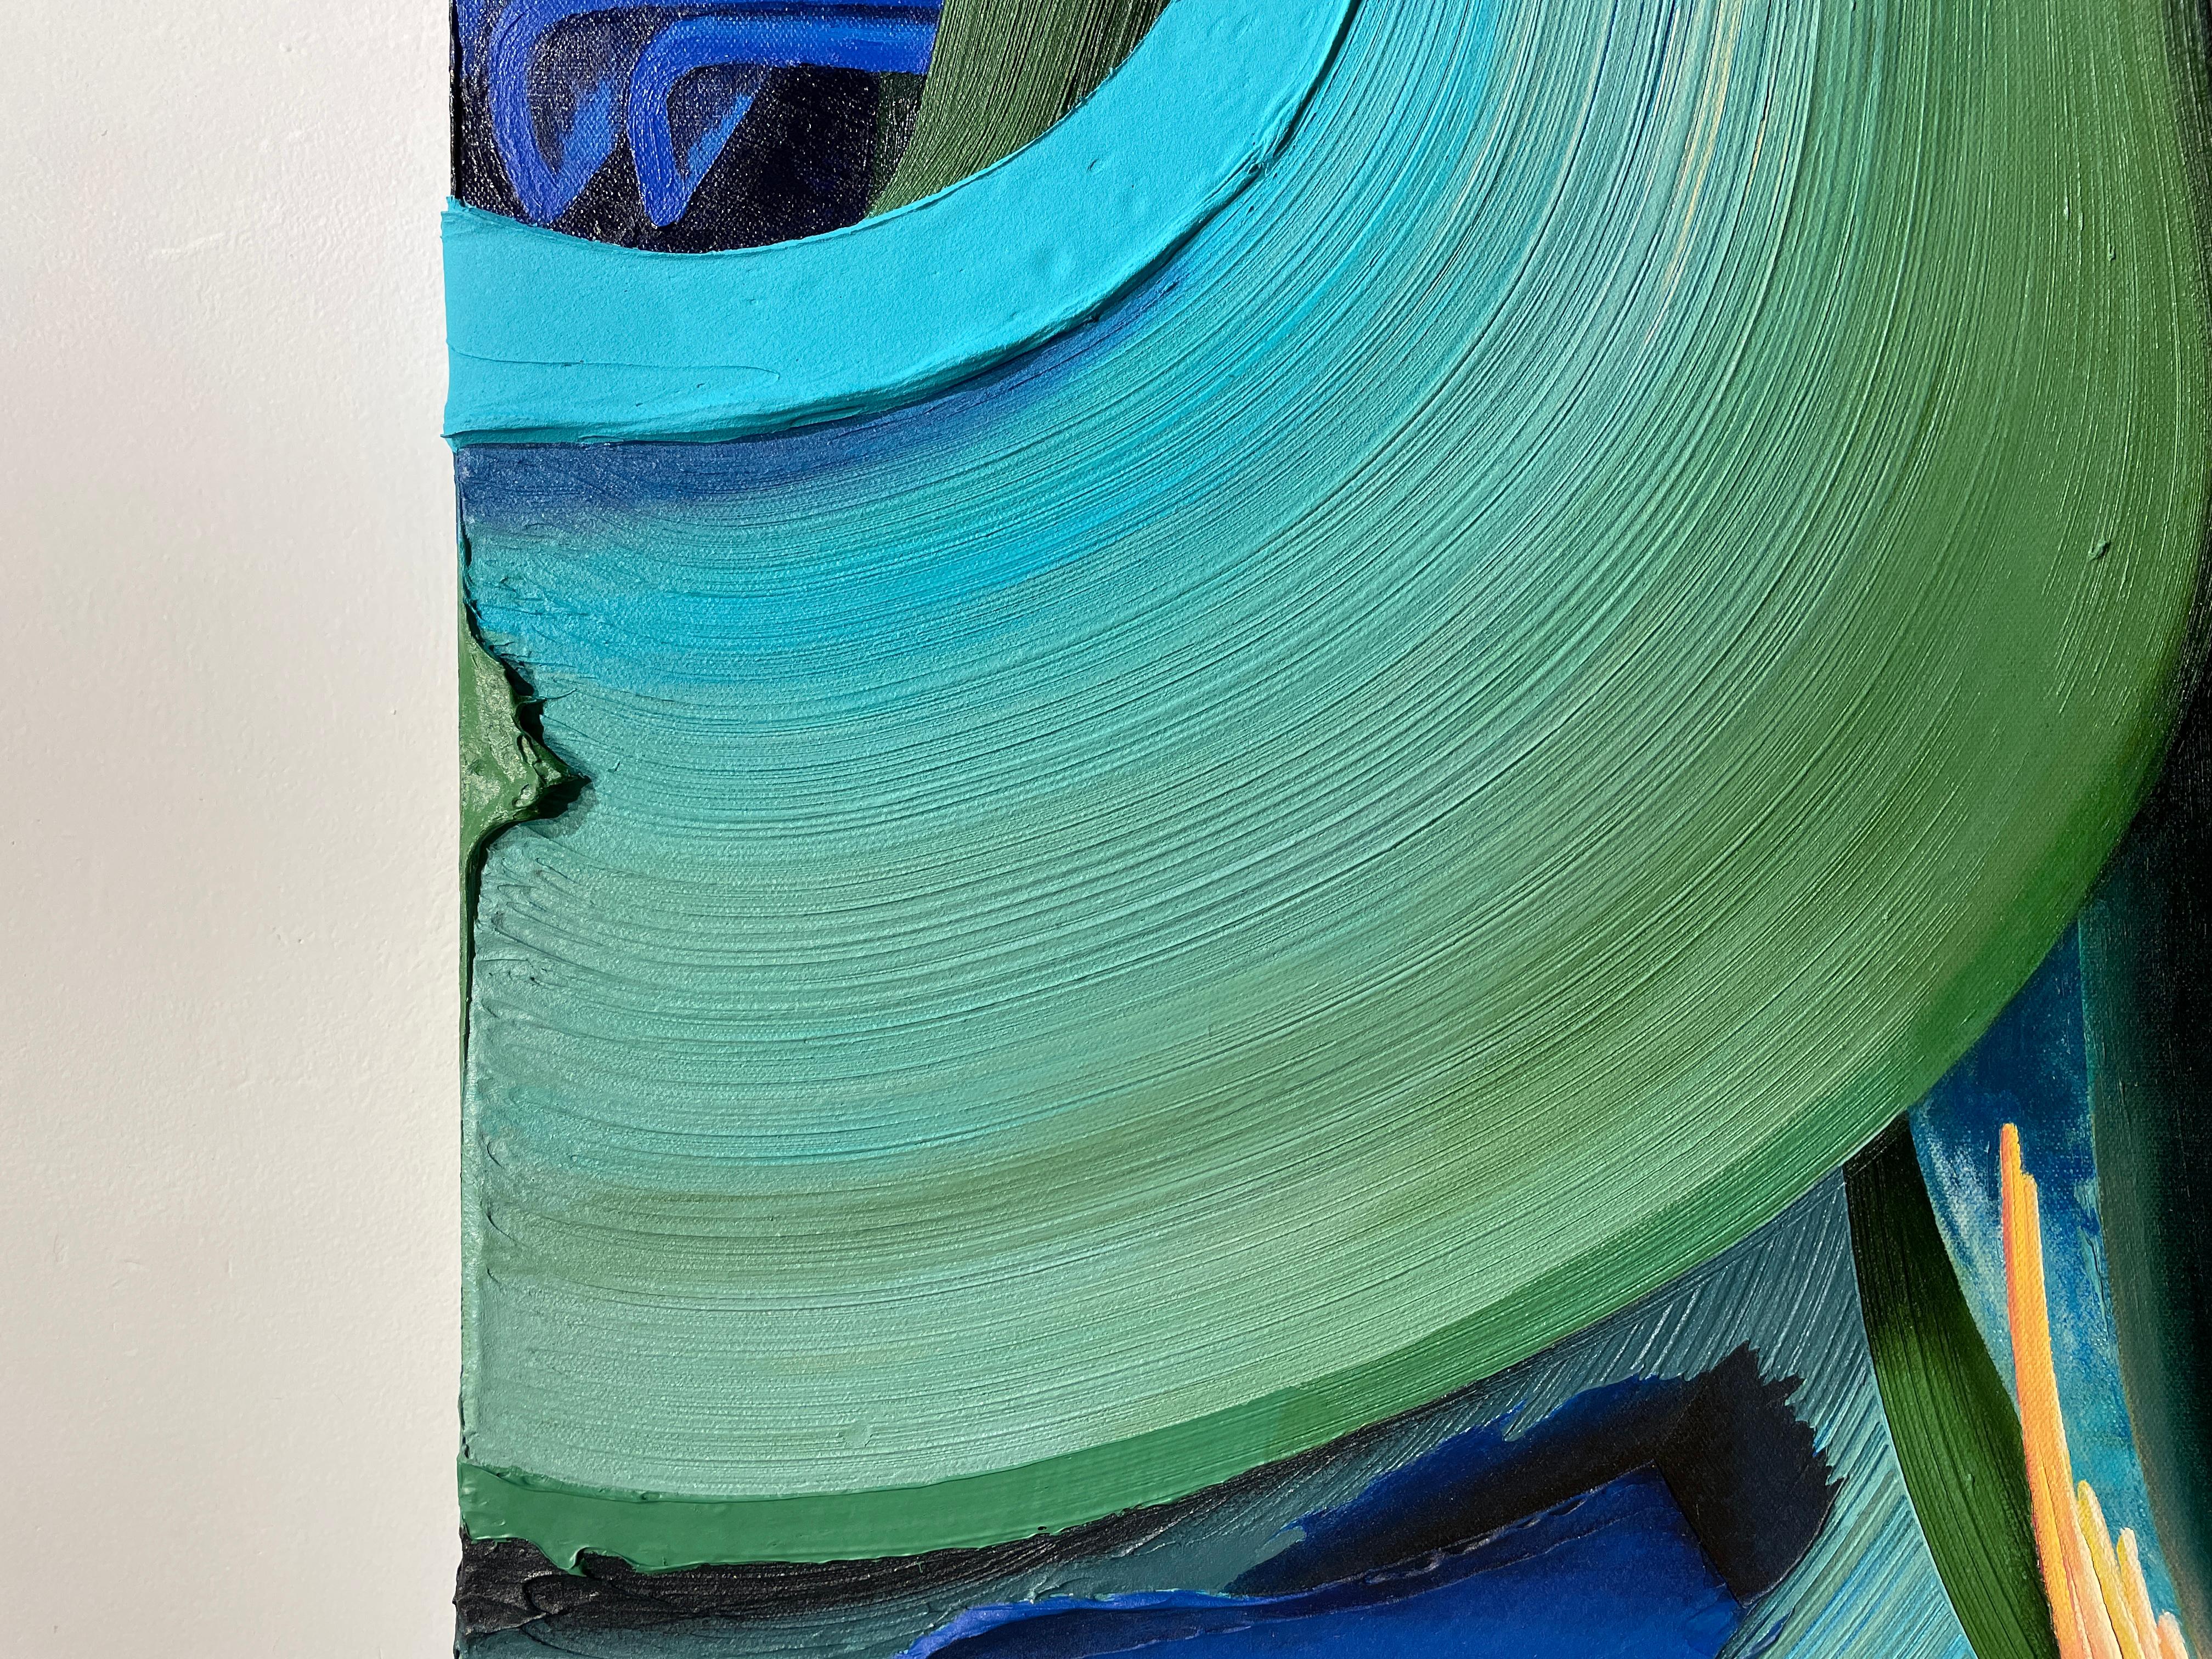 Farbe, Linie, Textur, Muster und Prozess sind die formalen Qualitäten der abstrakten Arbeit.  Indem er diese Qualitäten erforscht, schafft Connor Hughes eine viszerale und zerebrale Erfahrung im Abstrakten.  Felder aus Farbe und Textur füllen die